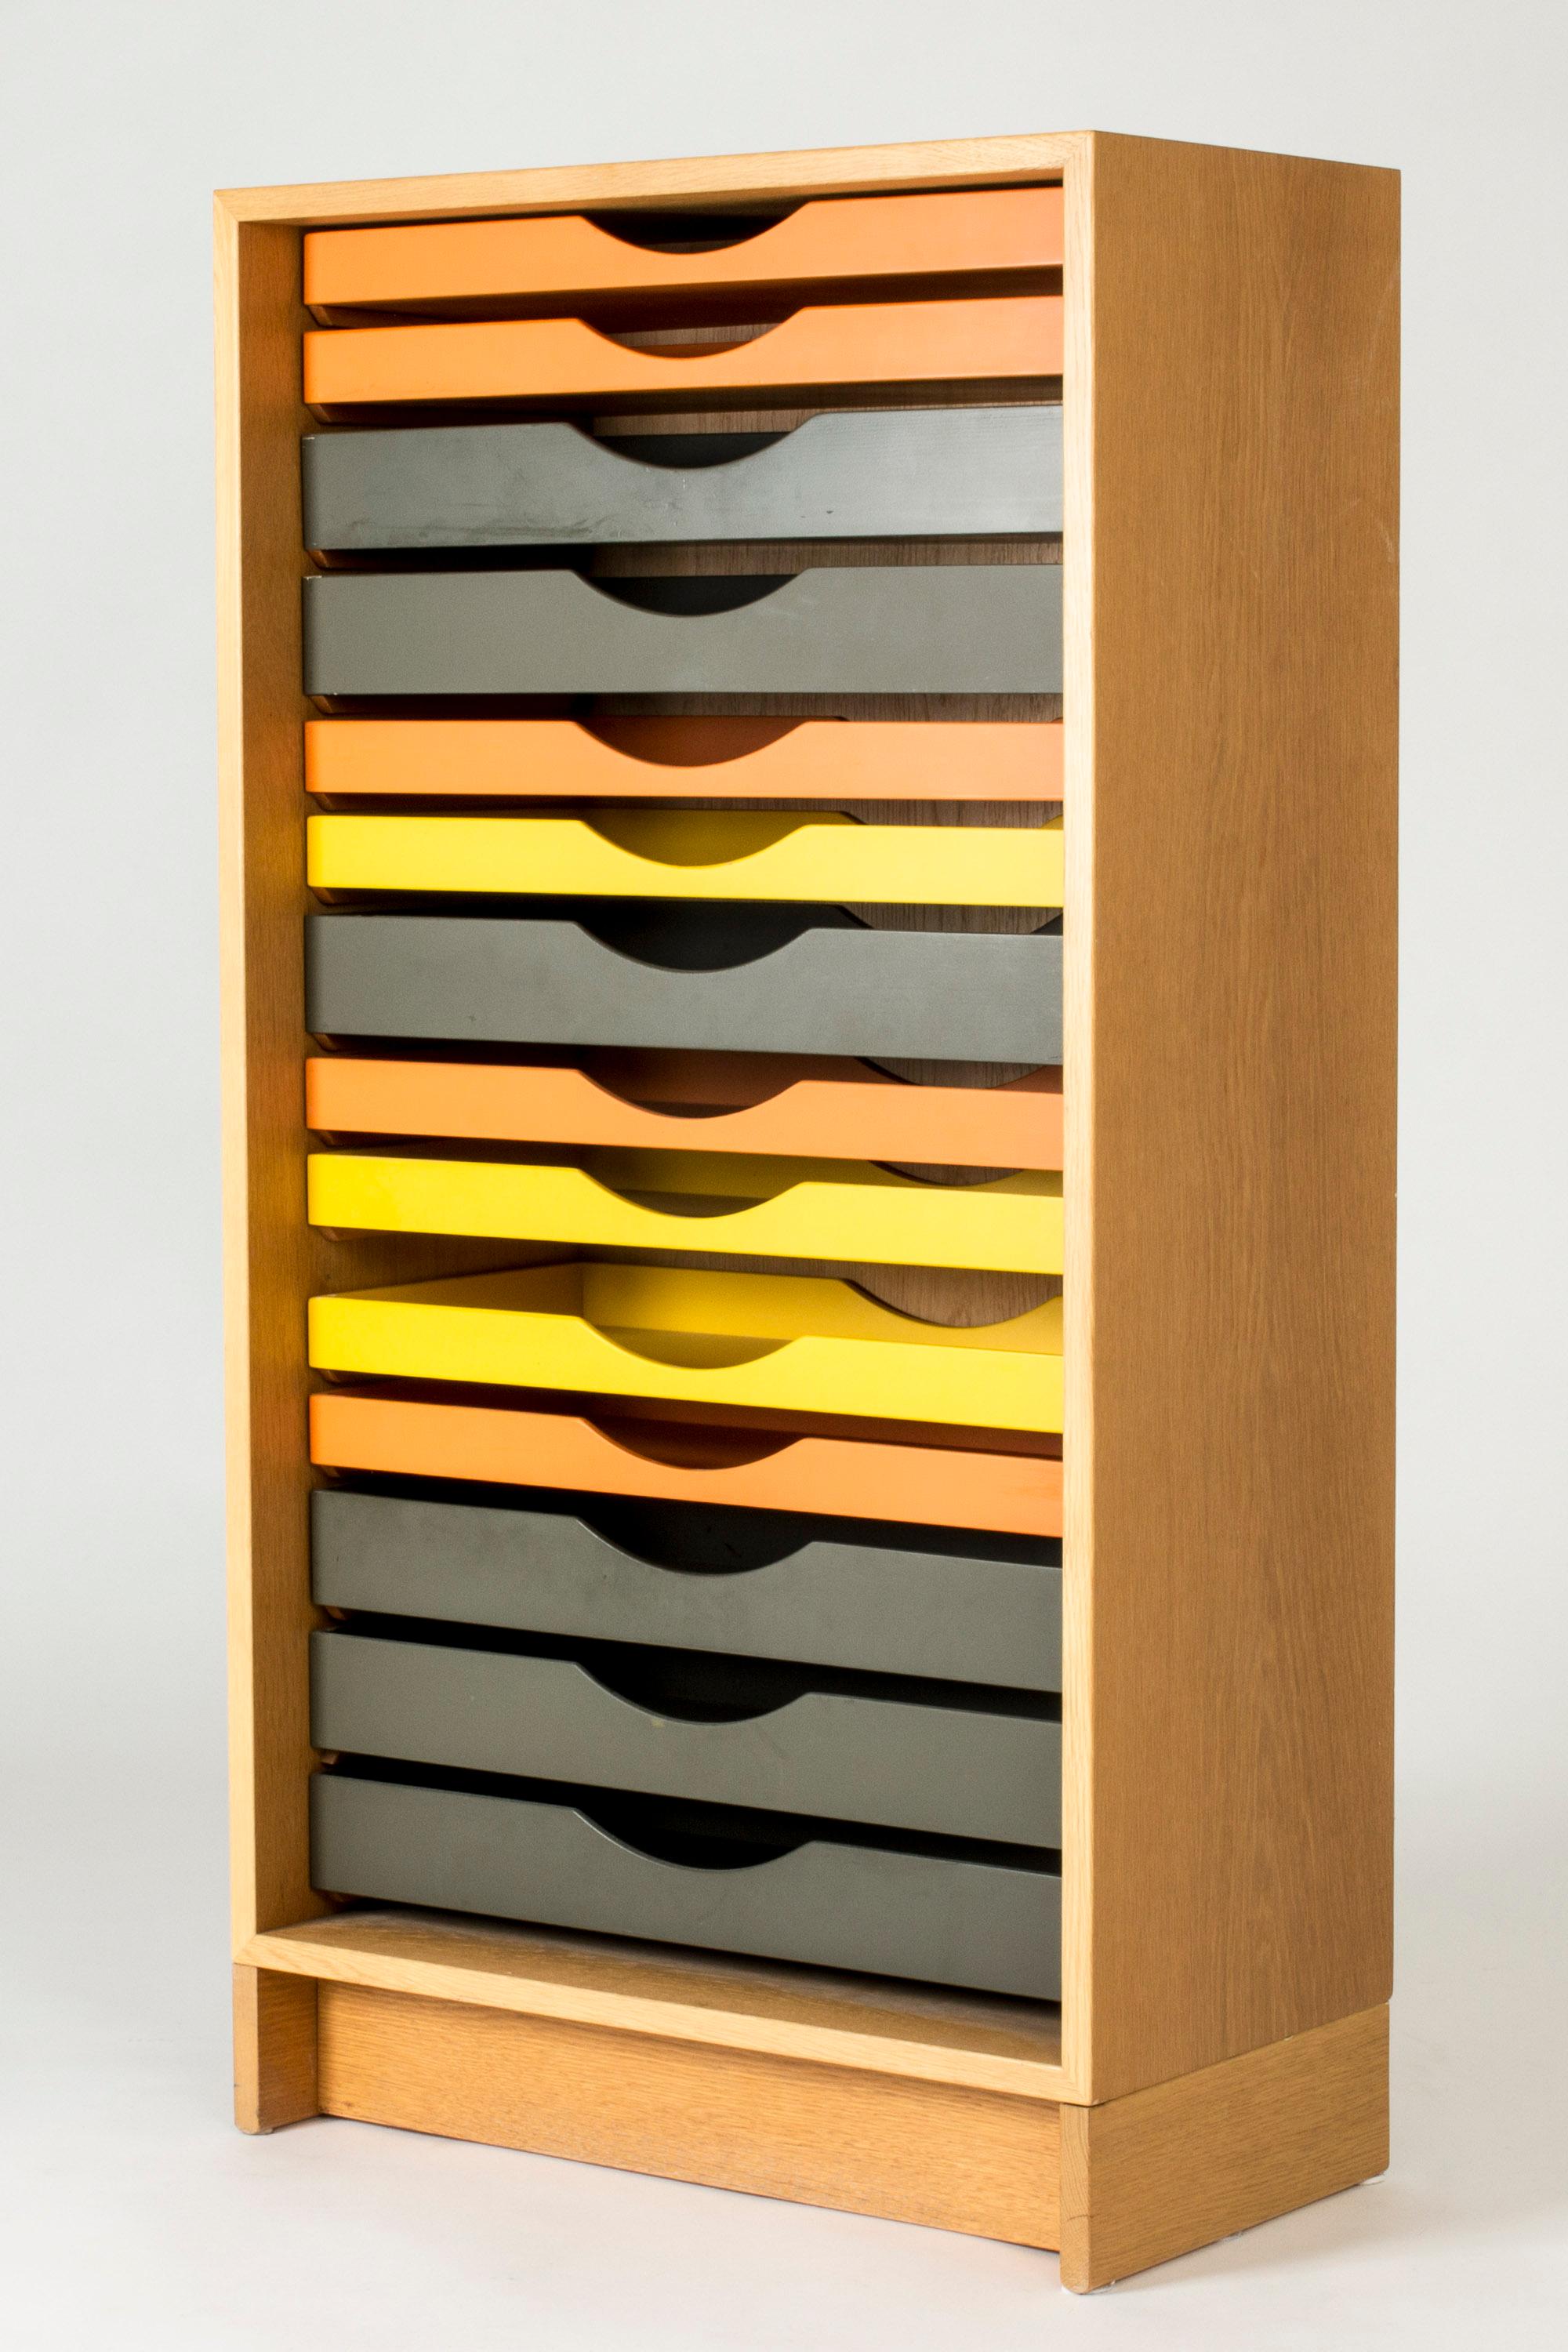 Etonnant classeur coloré de Børge Mogensen, fabriqué en chêne. Tiroirs de différentes hauteurs, laqués jaune, orange et gris. Les tiroirs peuvent être réorganisés.